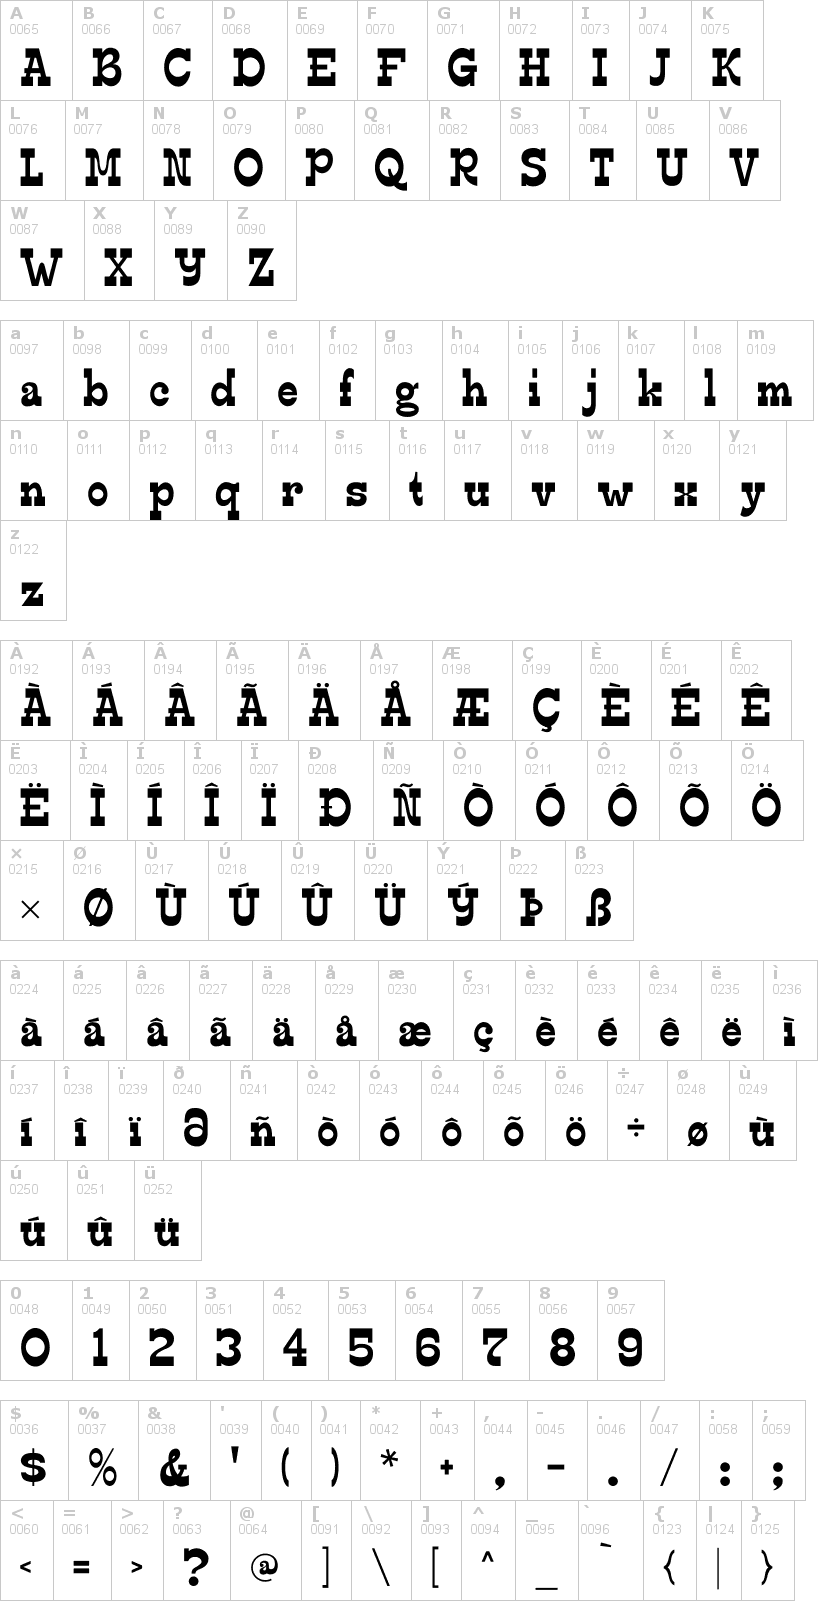 Lettere dell'alfabeto del font edmunds con le quali è possibile realizzare adesivi prespaziati